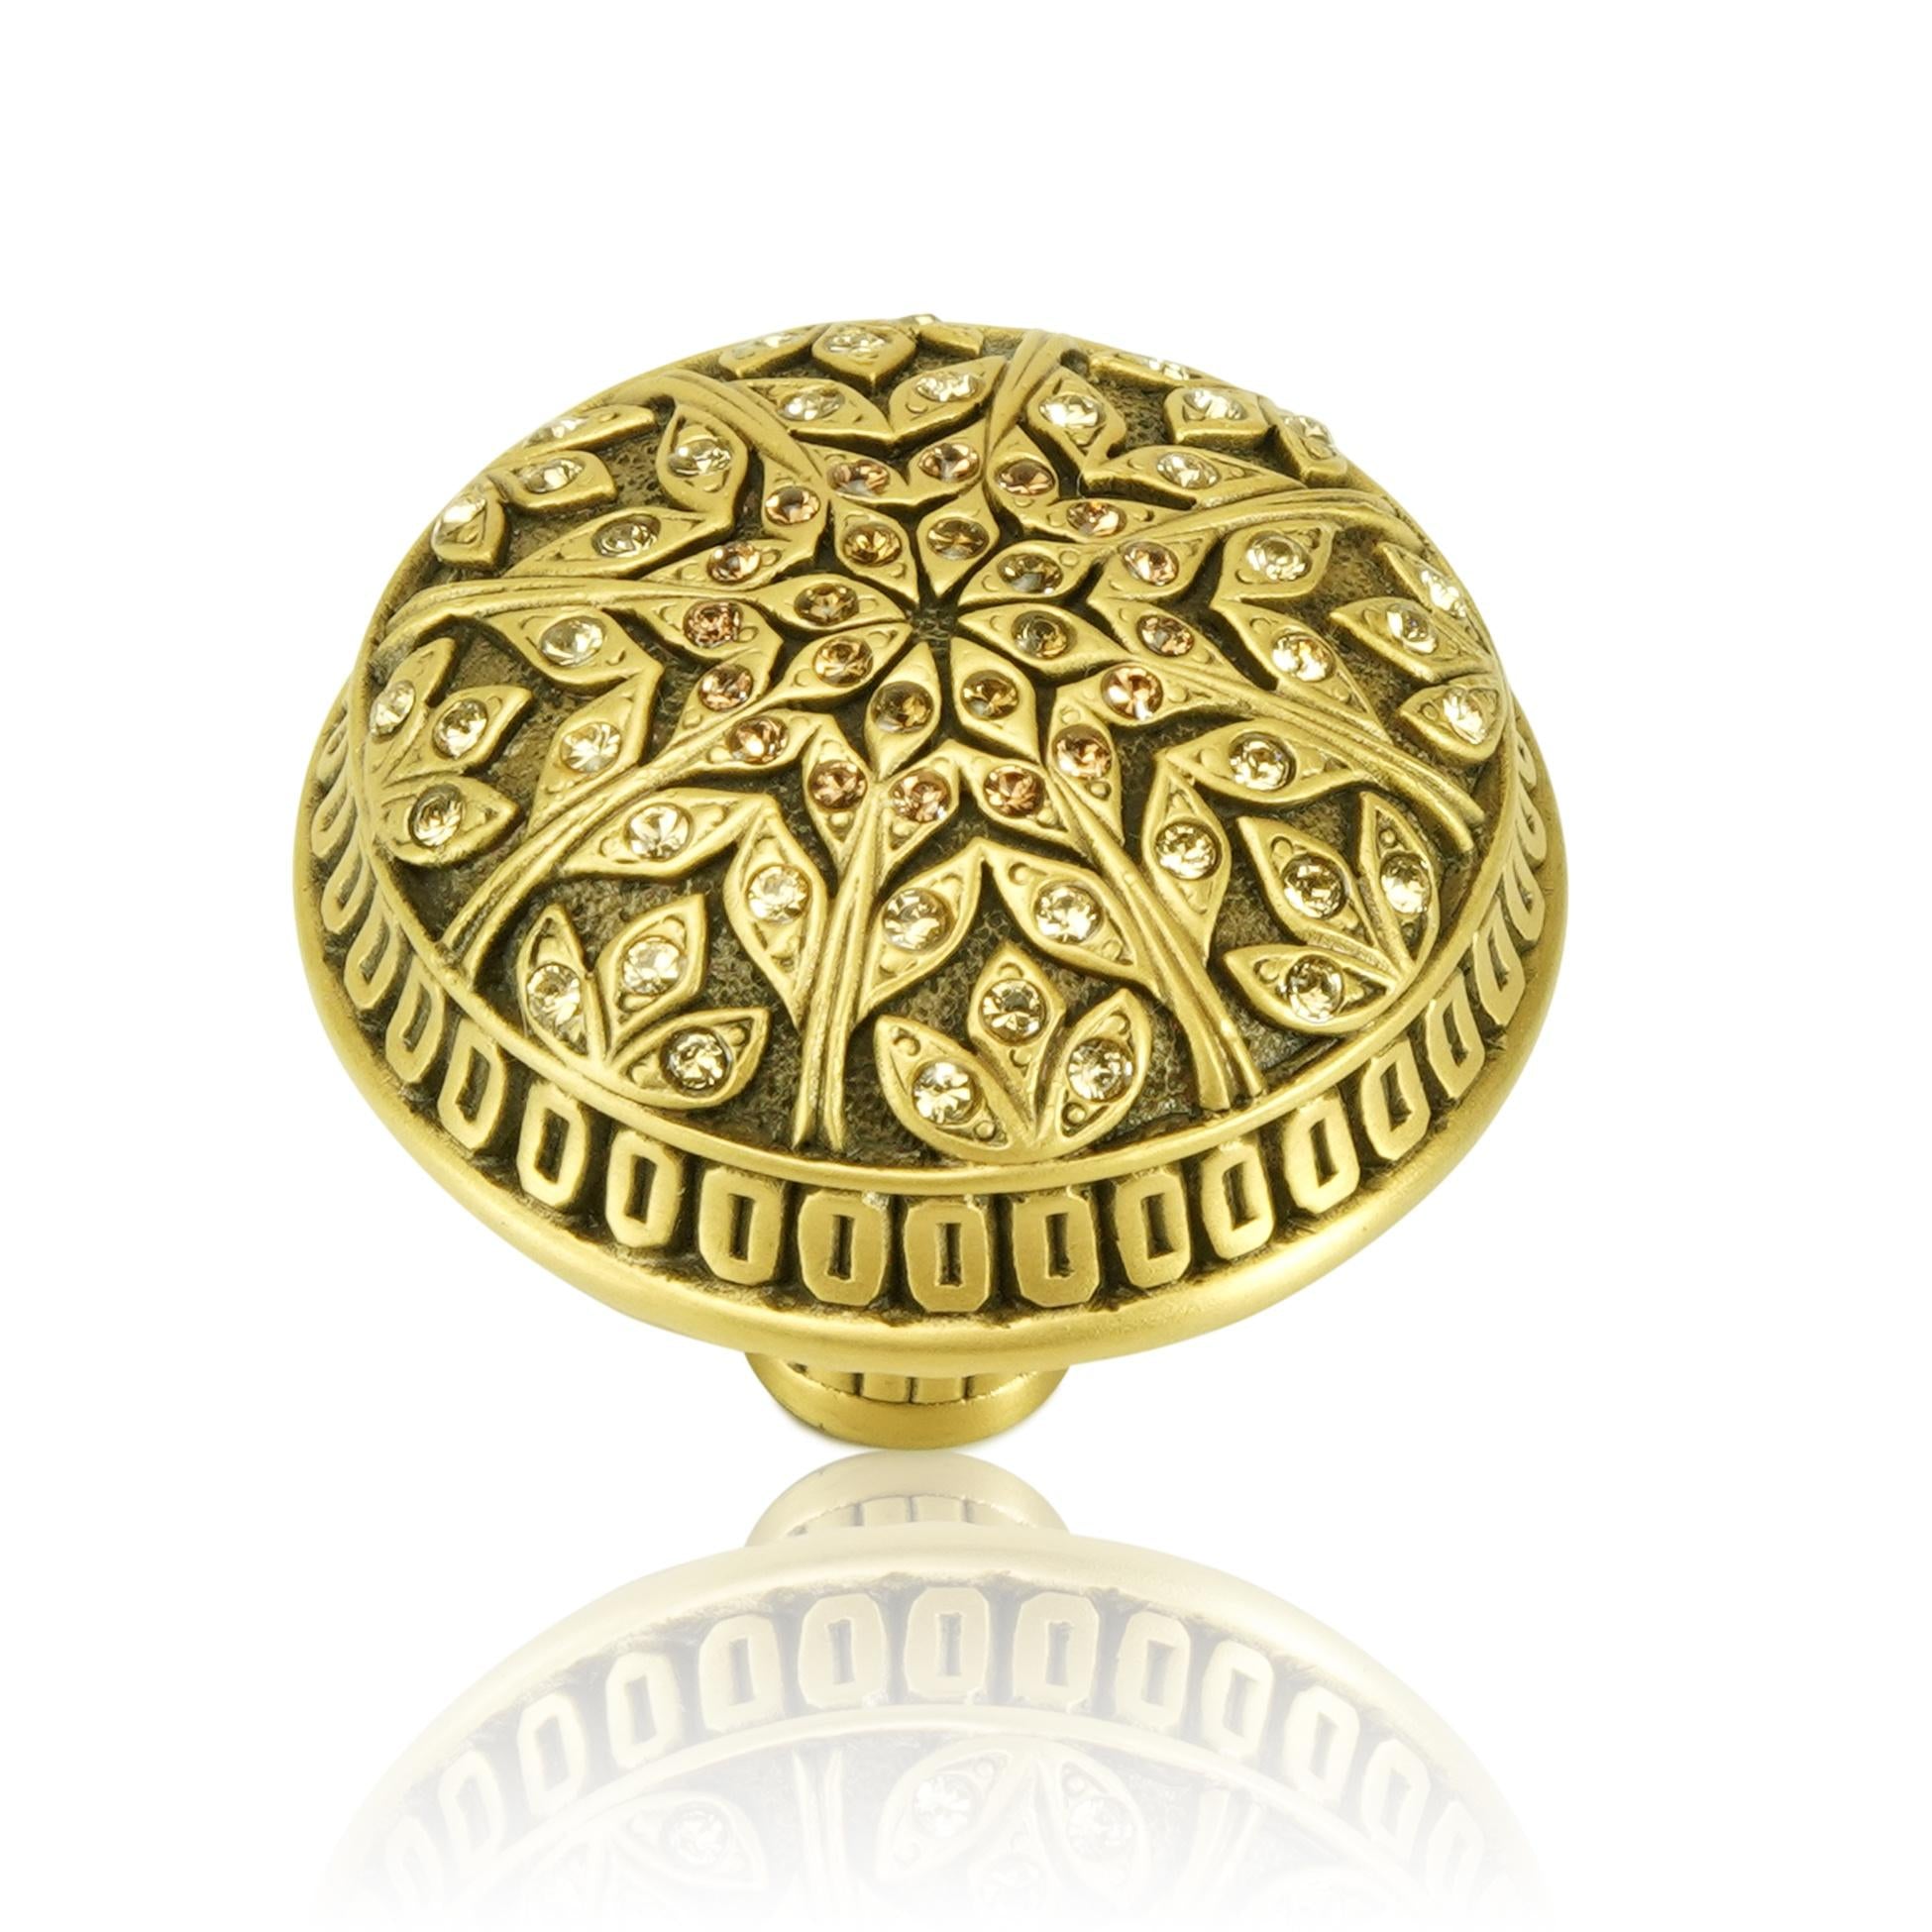 museum gold knob